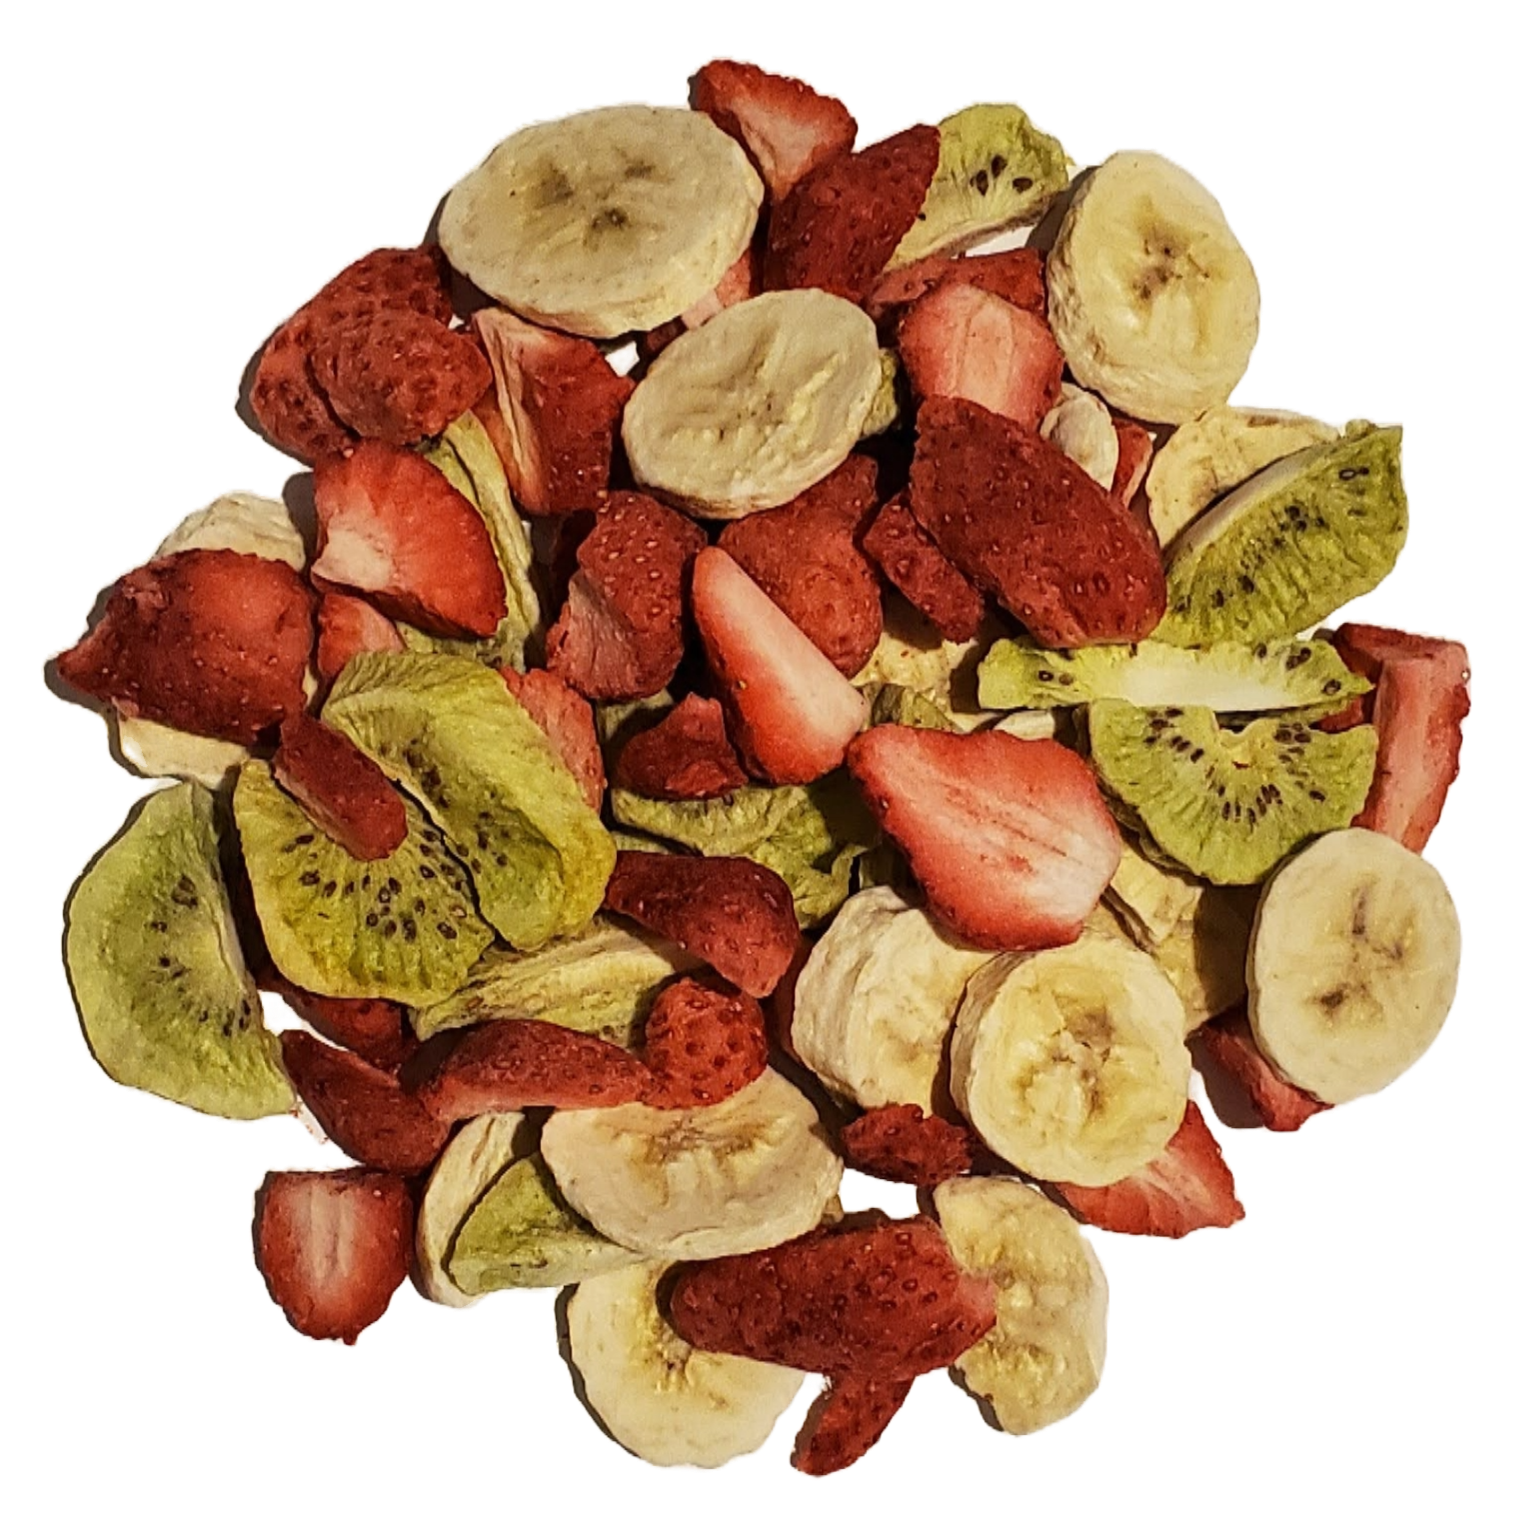 Kiwis, fraises et bananes lyophilisés 45g Large Image